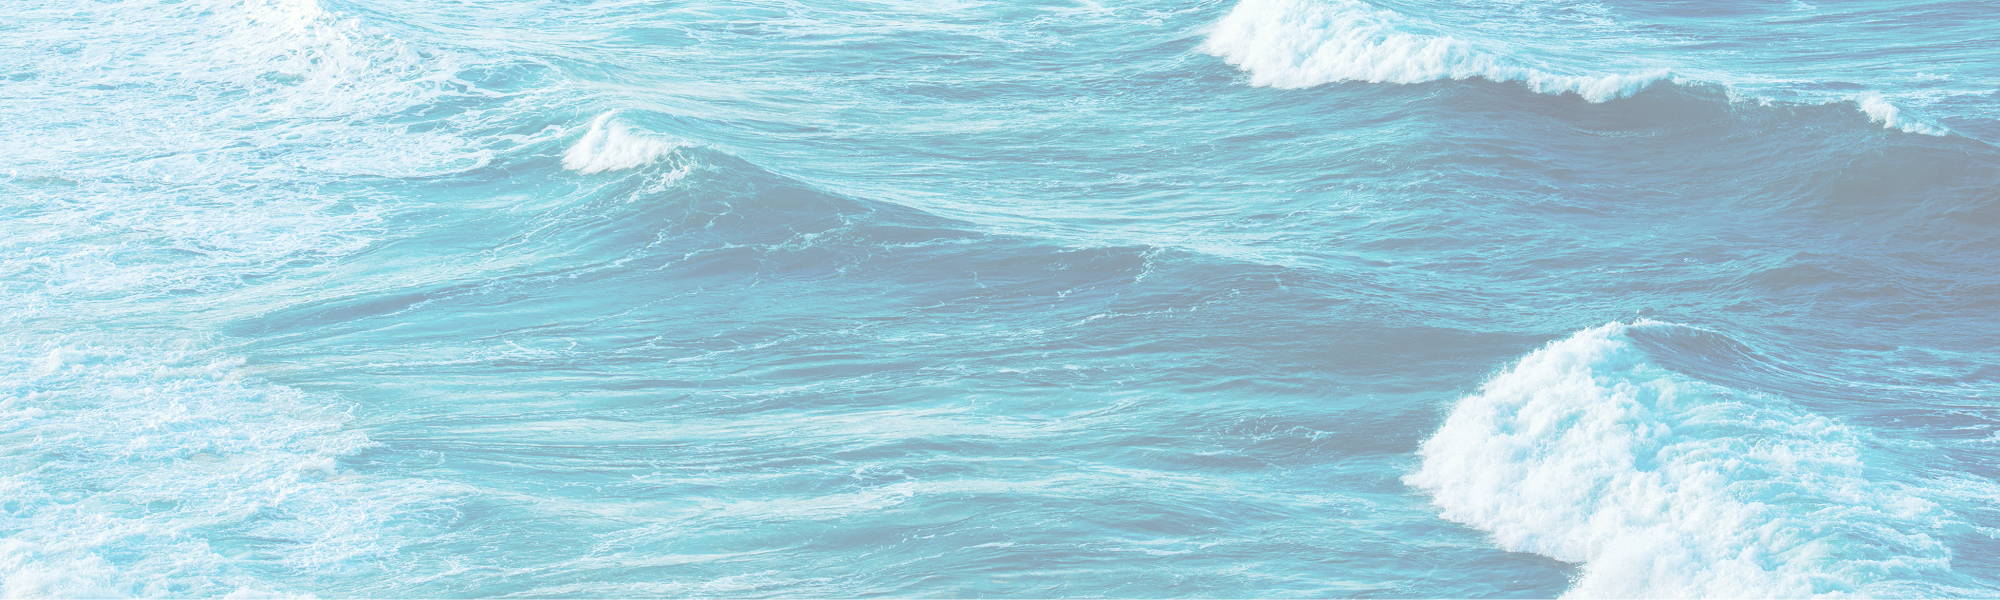 image of ocean water